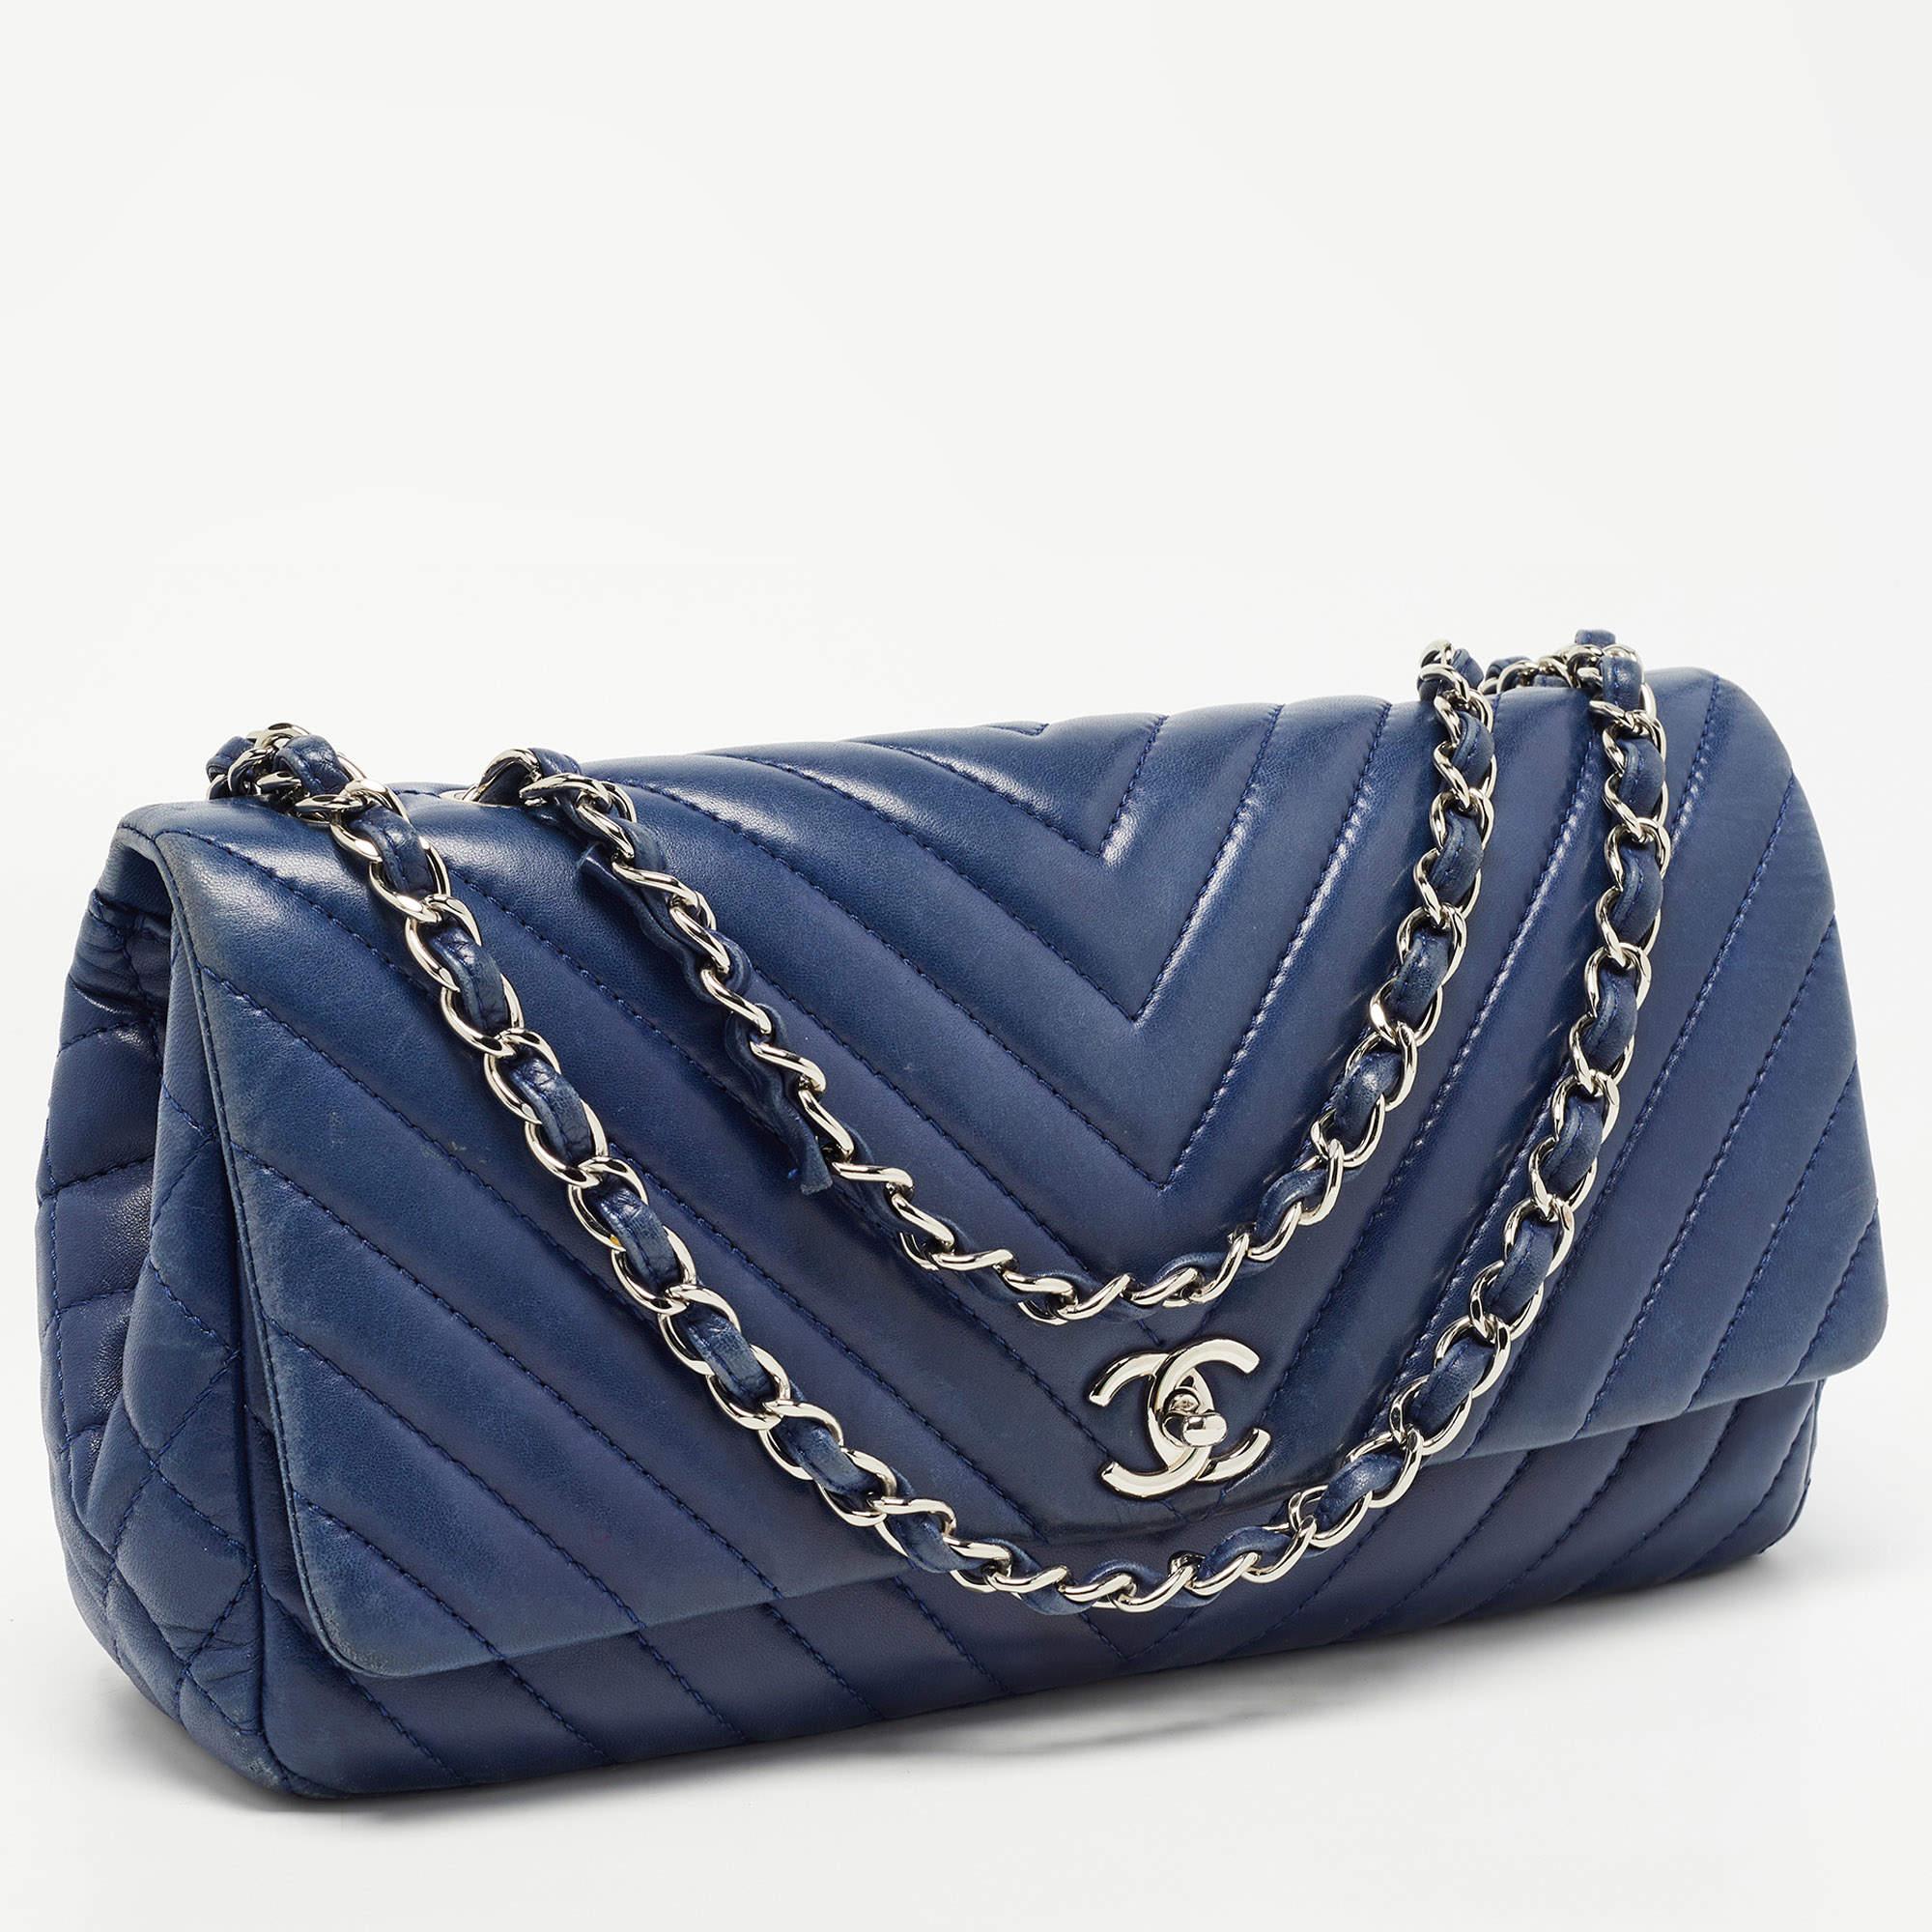 Women's Chanel Blue Surpique Chevron Leather CC Flap Bag